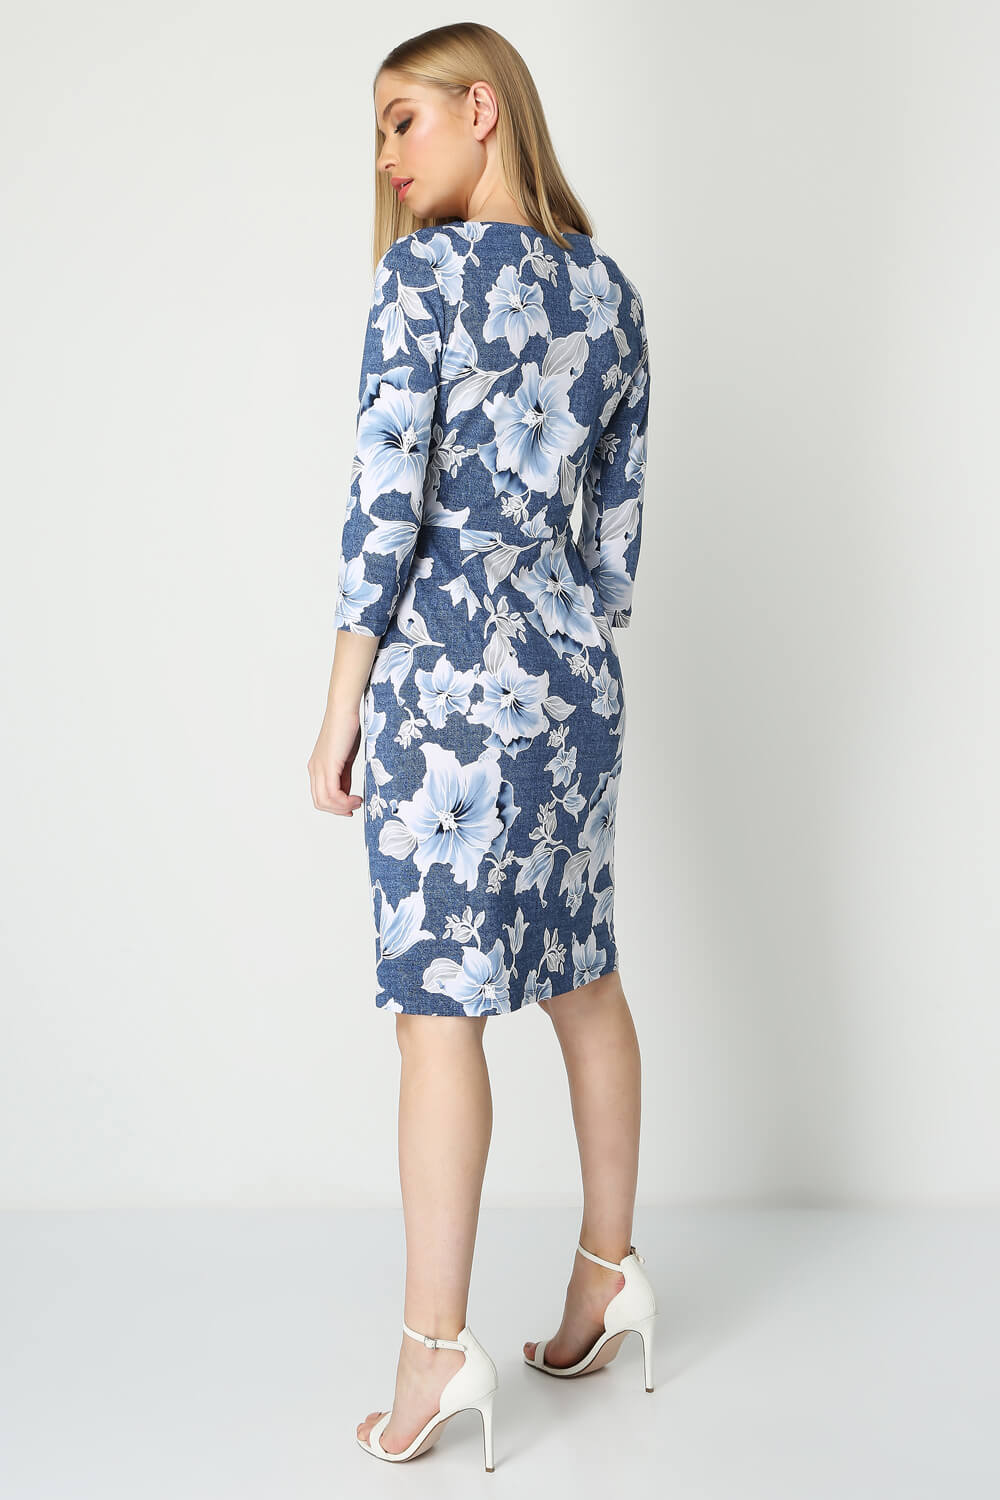 Blue Floral Print Pocket Dress, Image 3 of 4